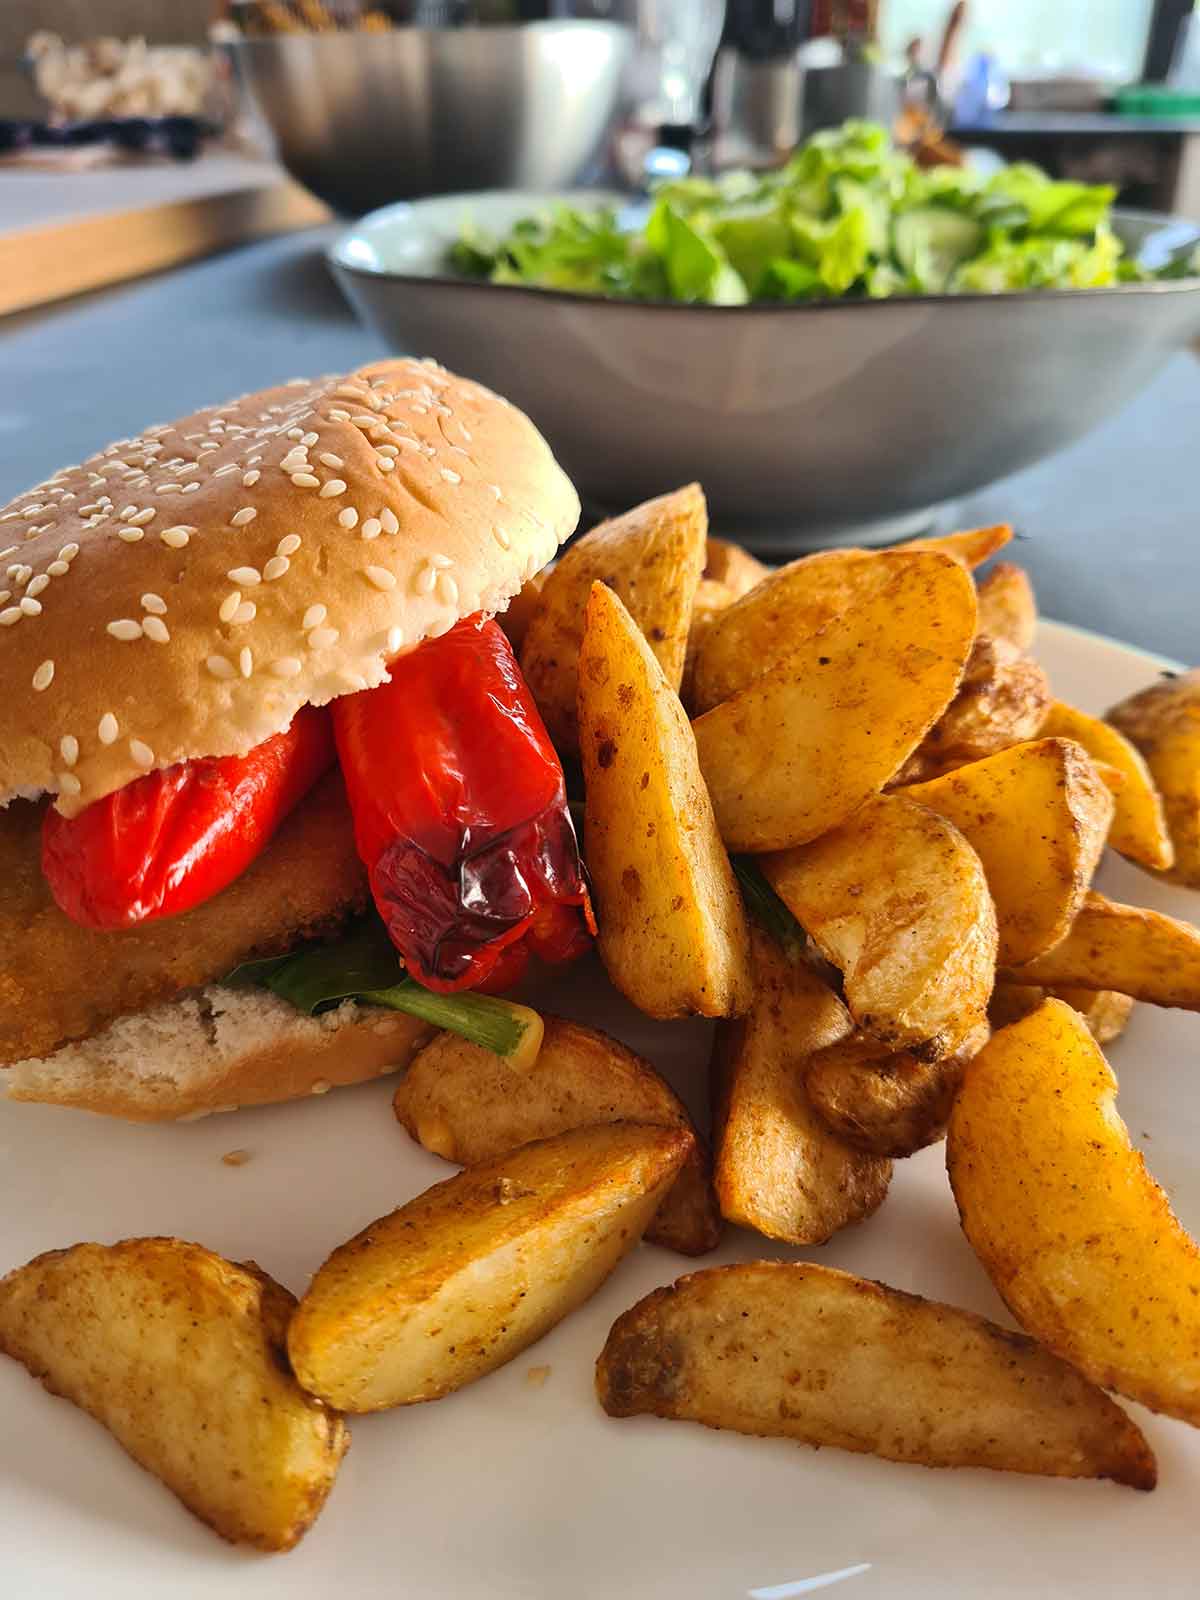 lunch vegan schnitzel burger with potatoes